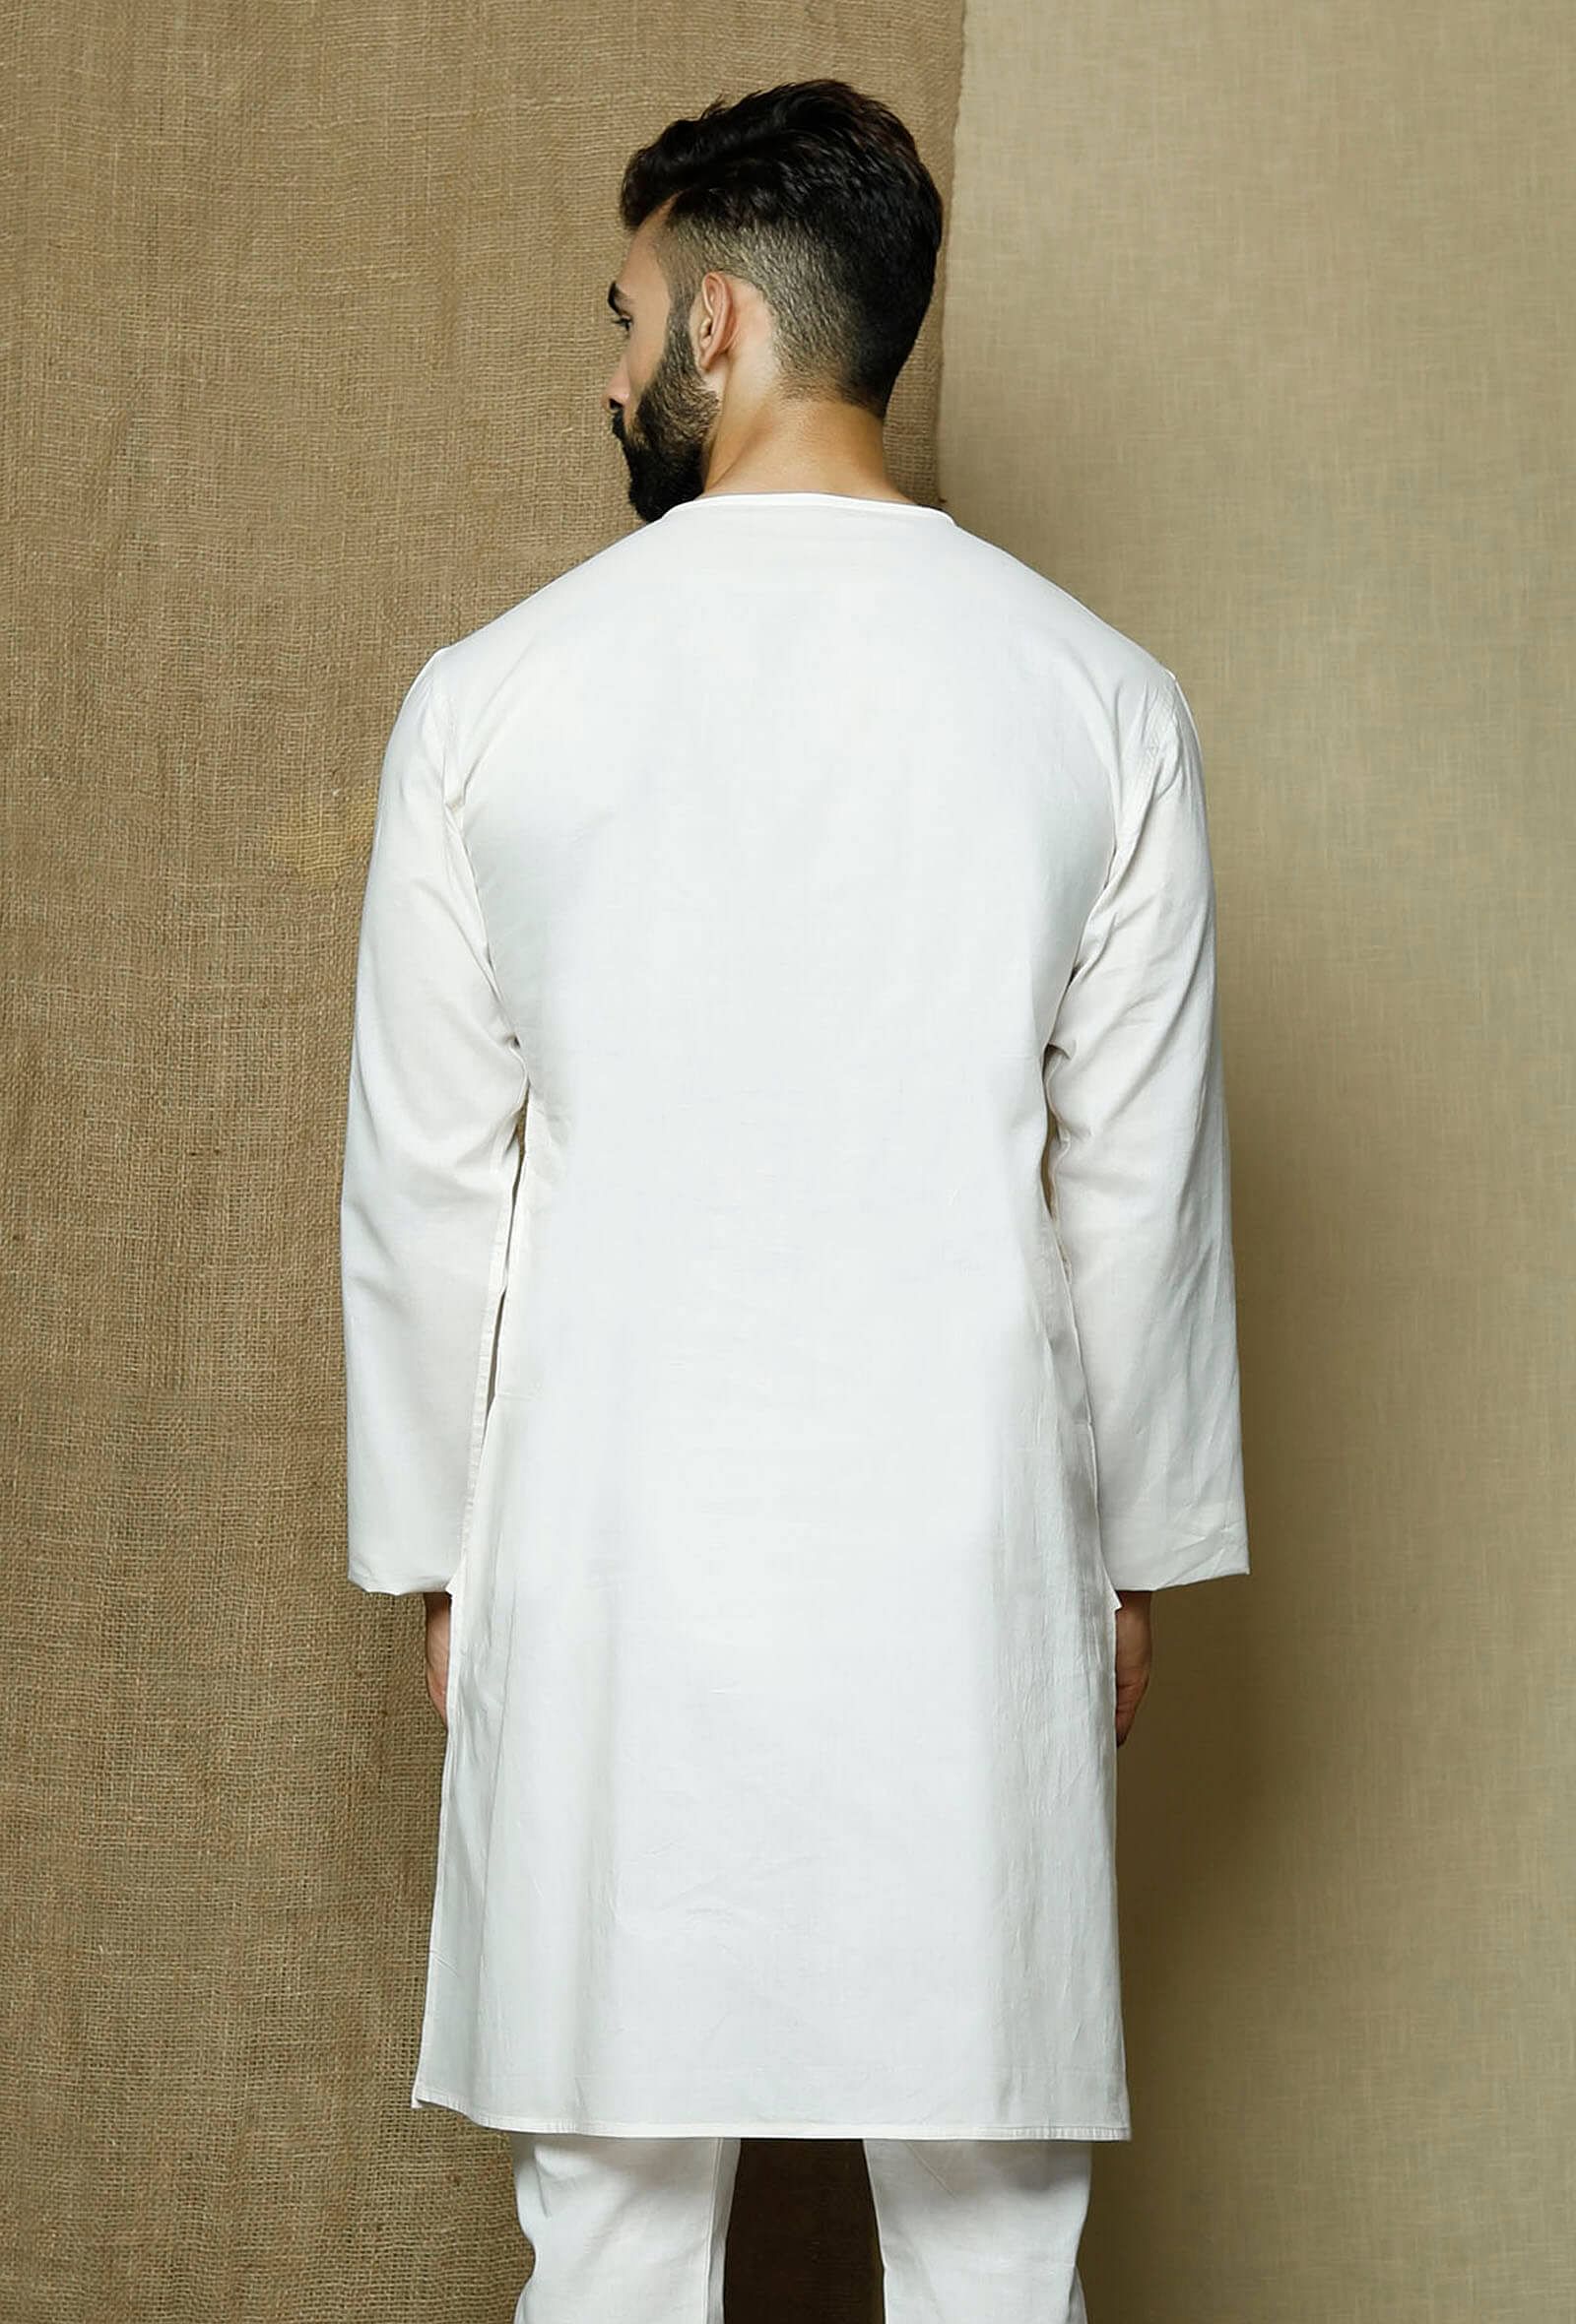 Ocher and Glitter Stripes Off-white Cotton Men's Kurta Pajama Set